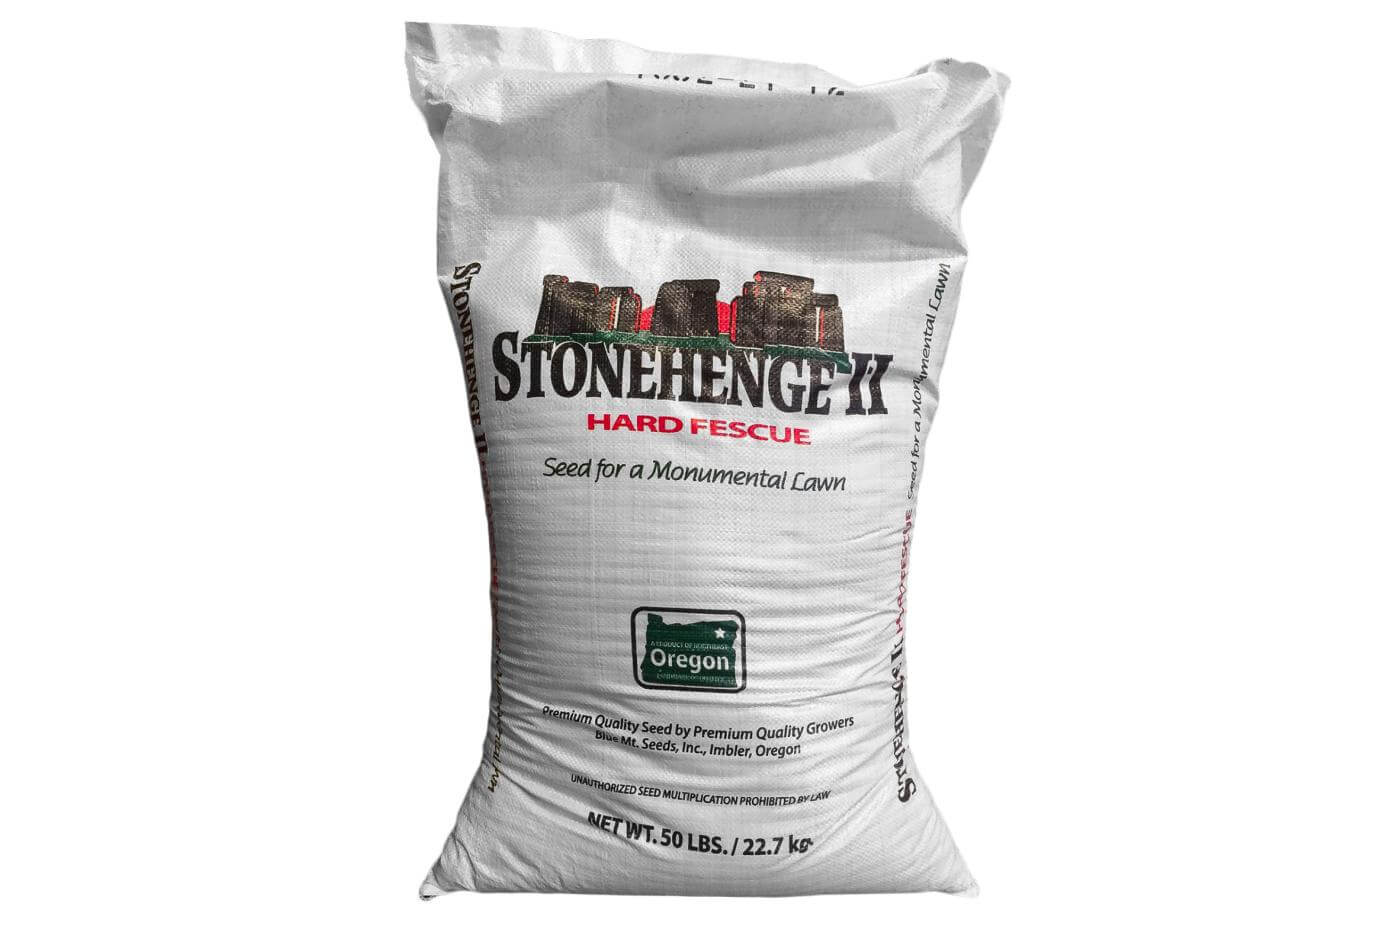 Stonehenge II Hard Fescue seed bag